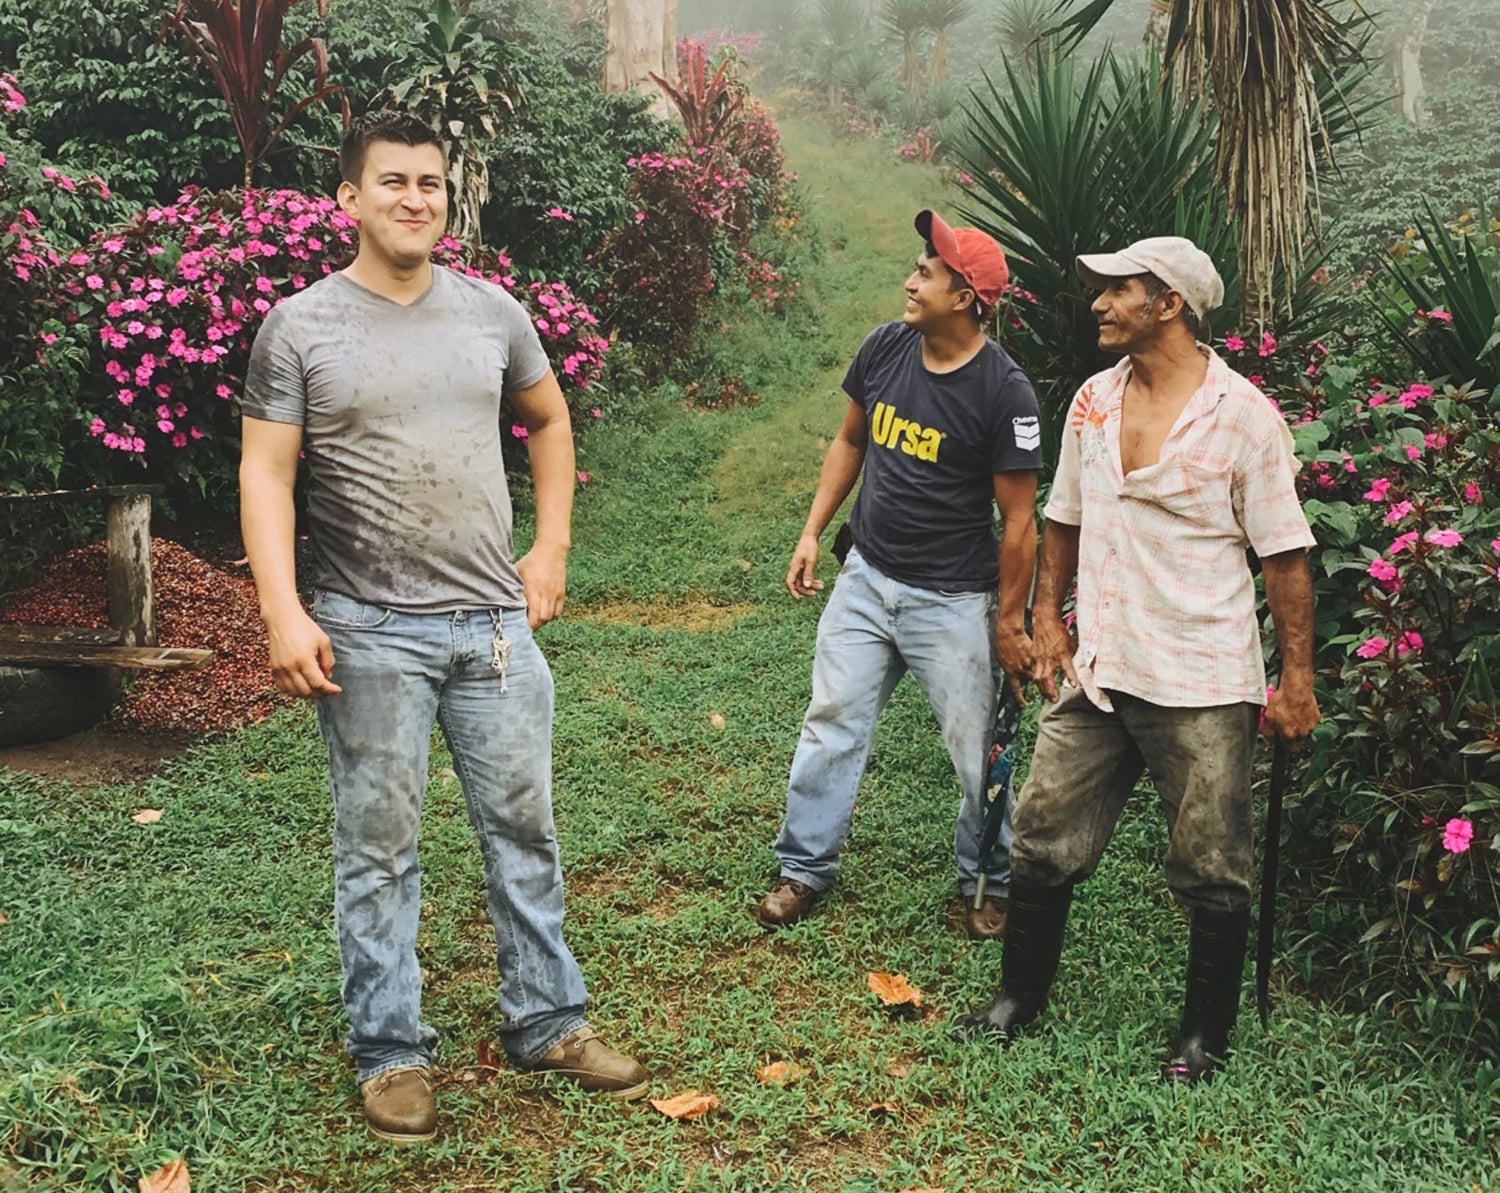 Three coffee farmers from Honduras